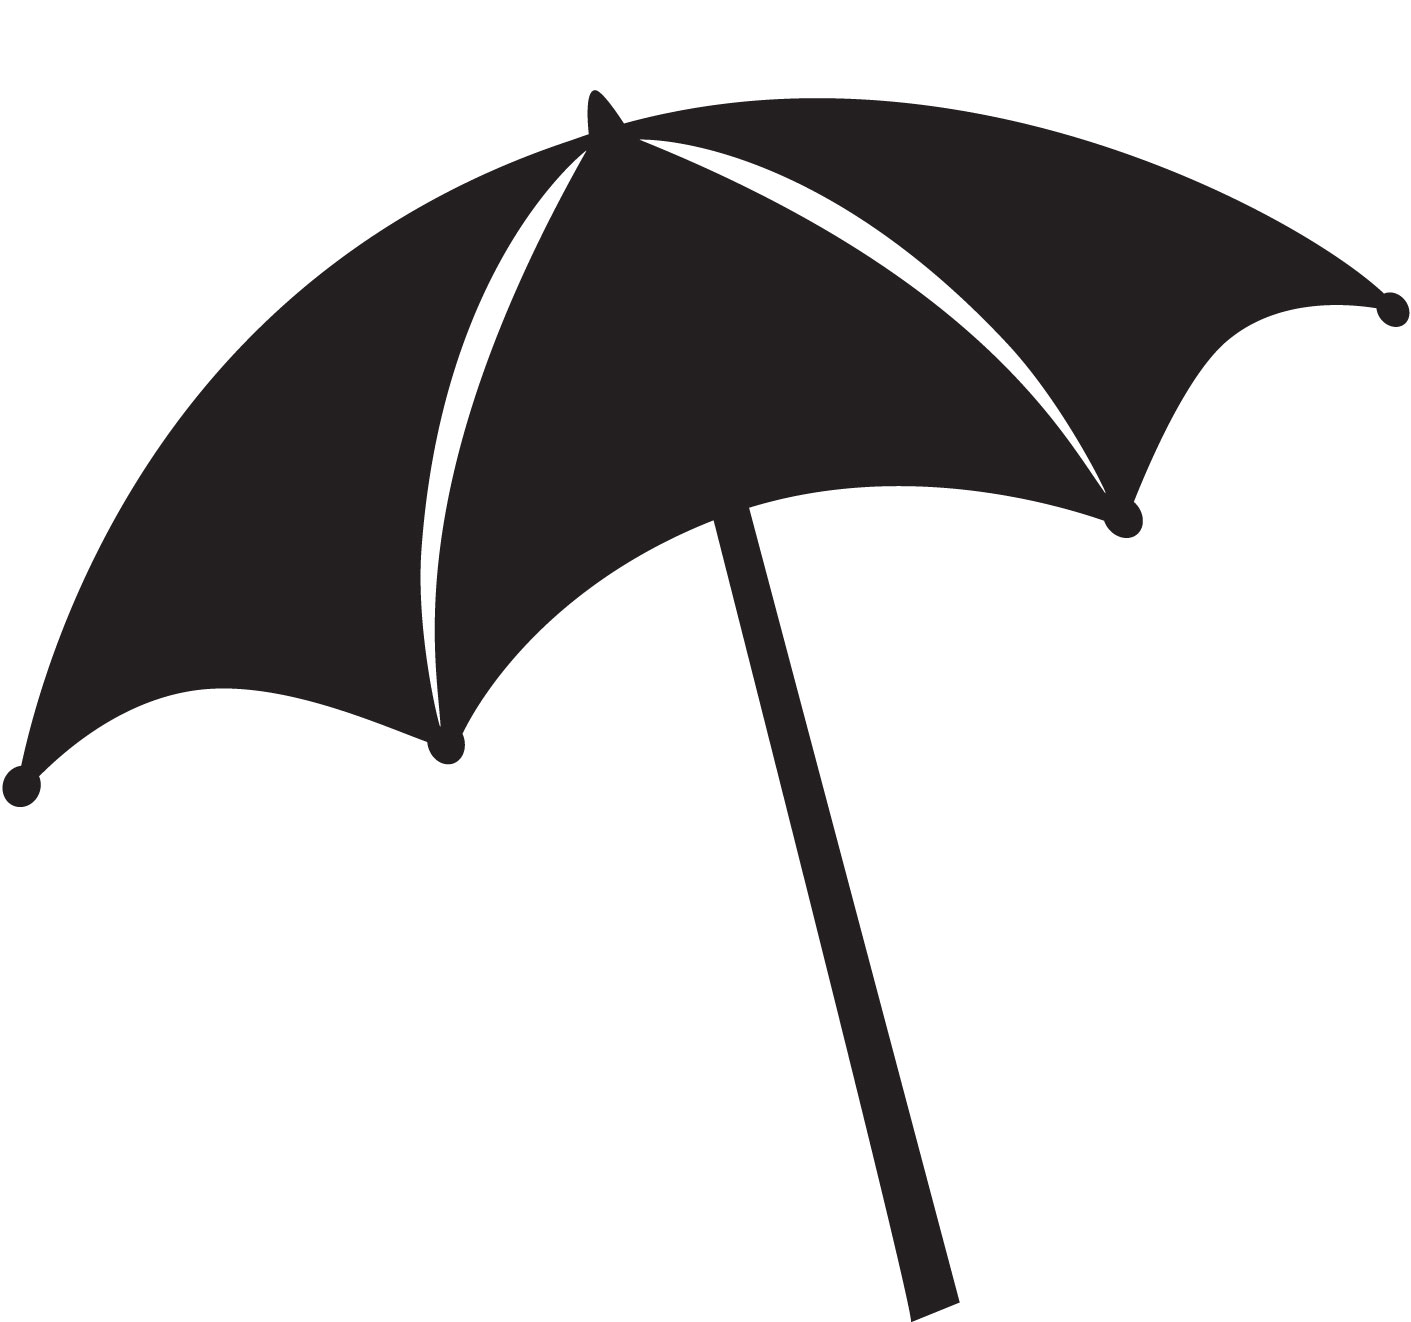 Beach chair umbrella silhouette clipart